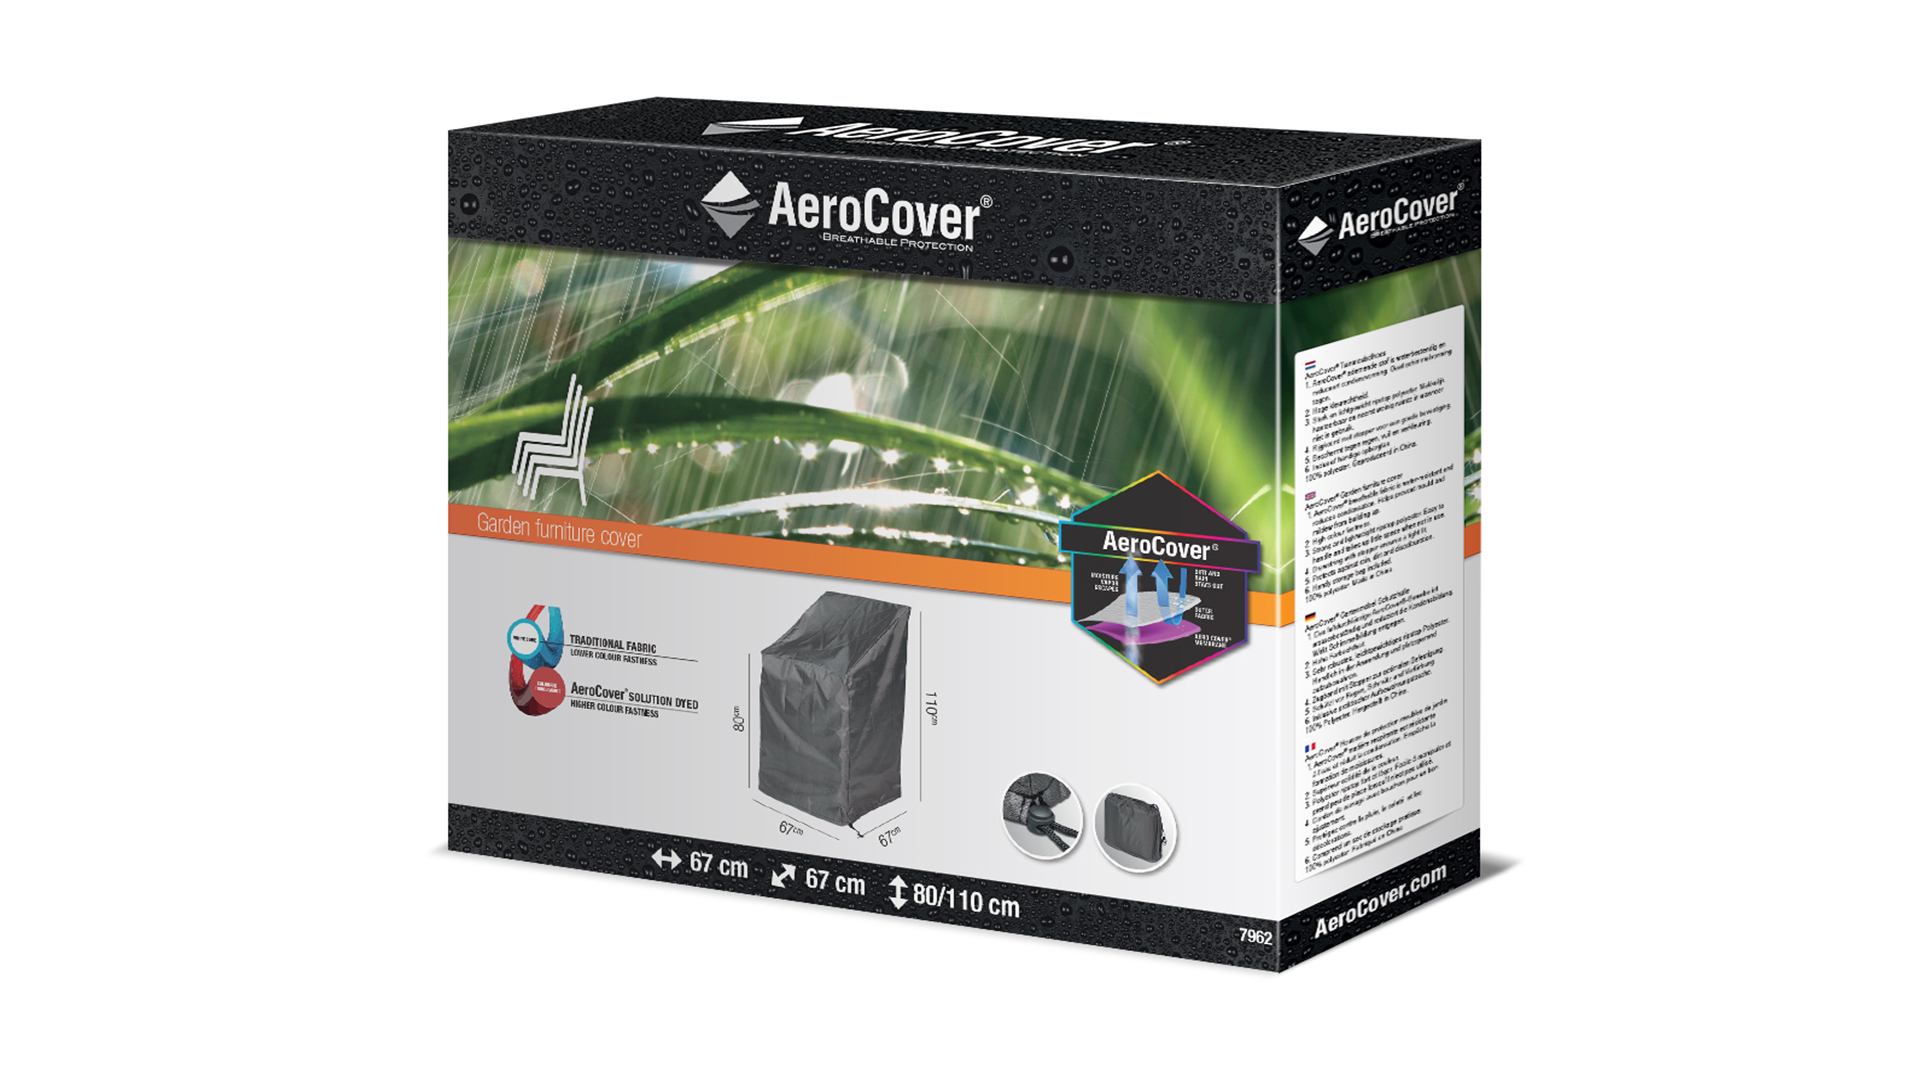 AeroCover Stapelstoelhoes – Gasveerstoelhoes  67x67x80x110cm